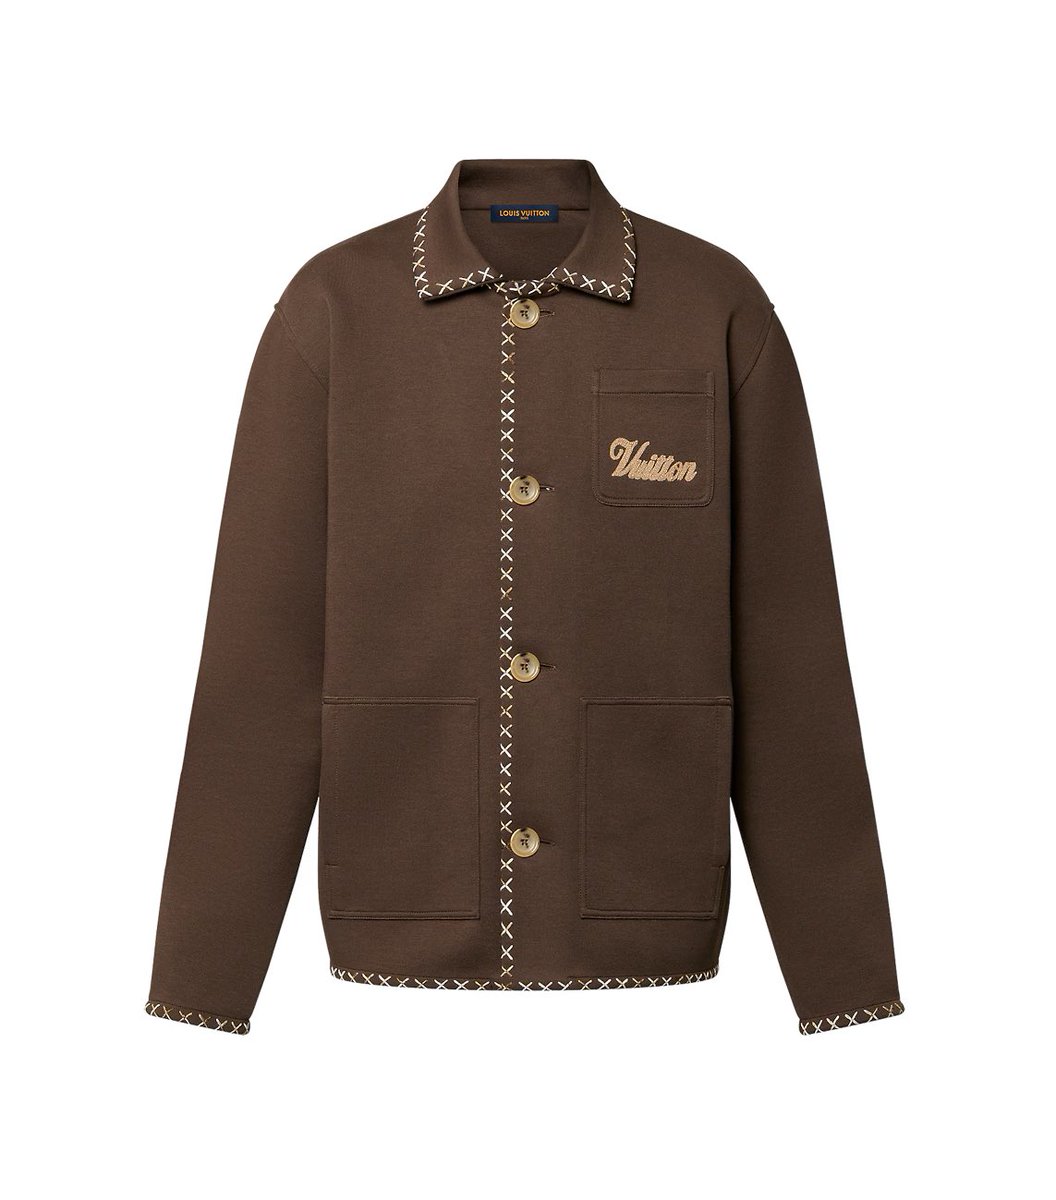 ▪️ LOUIS VUITTON
Embroidered Cotton Workwear Jacket ($2,570)

#BamBamxLouisVuitton 
#LouisVuitton @LouisVuitton
#BamBam @BamBam1A 
#bambamcloset